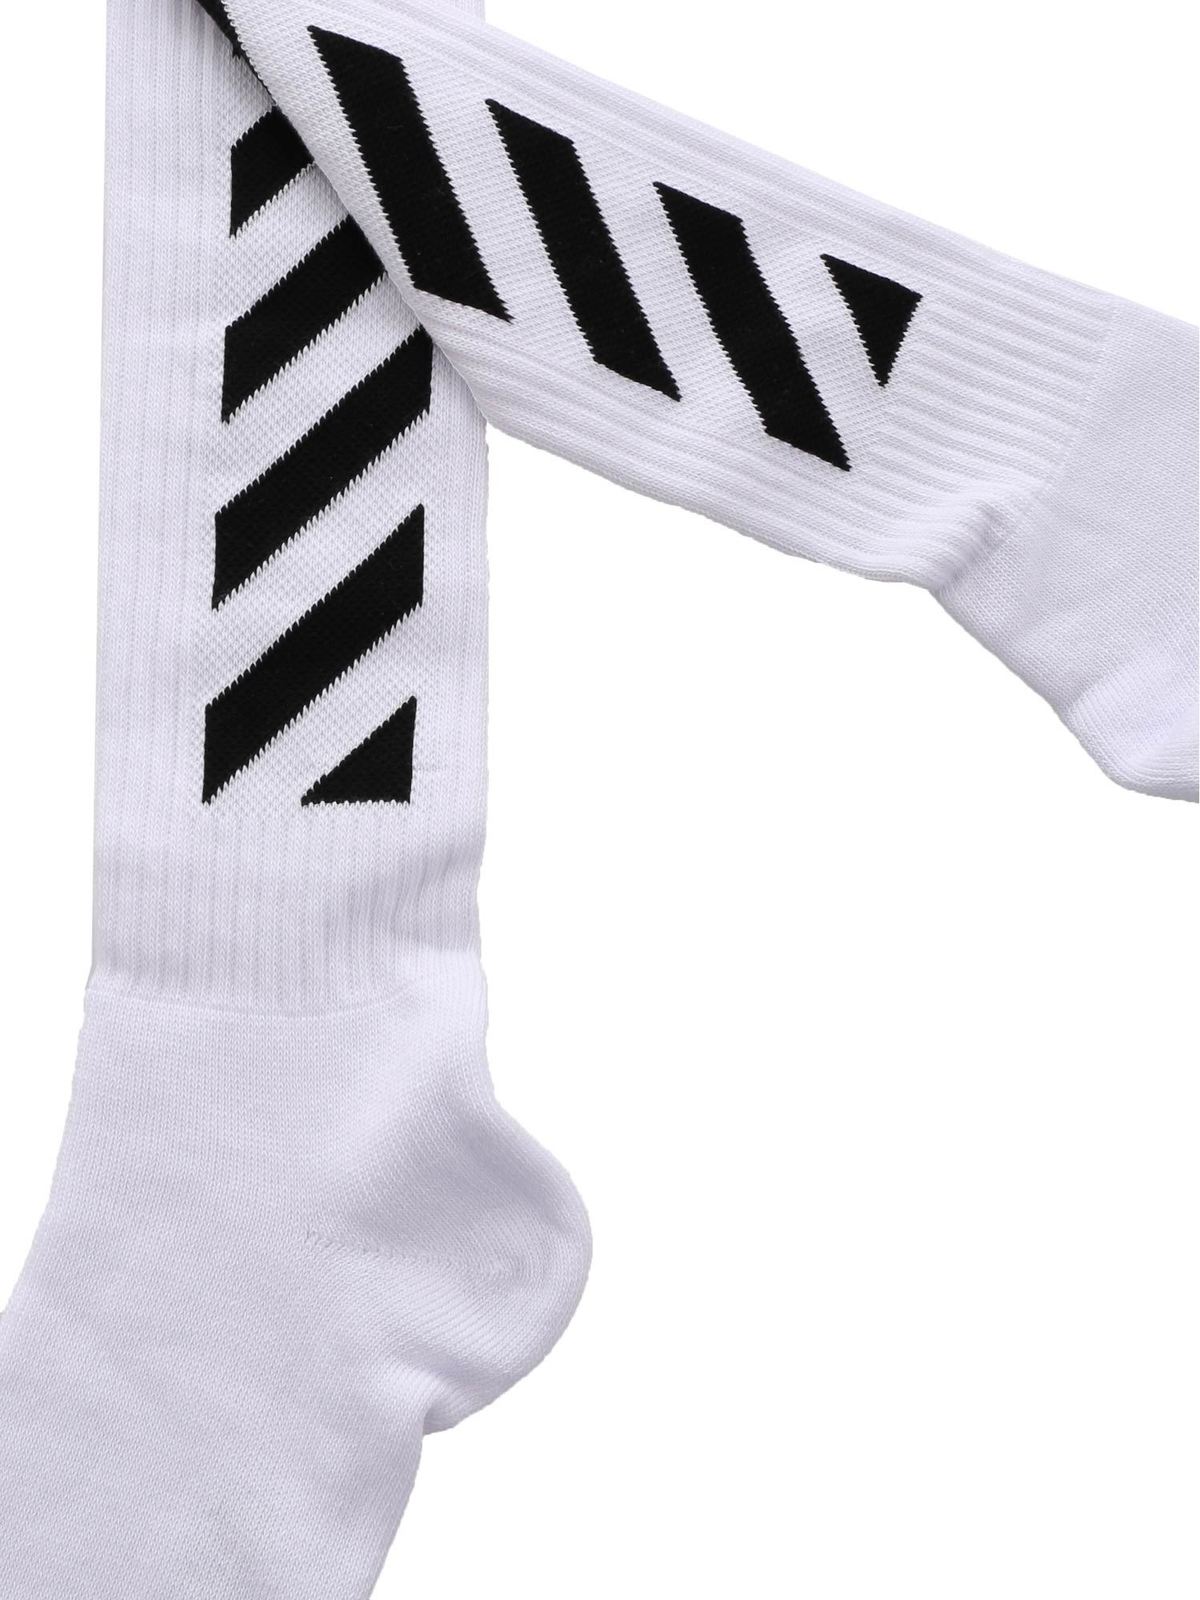 Diag socks in white